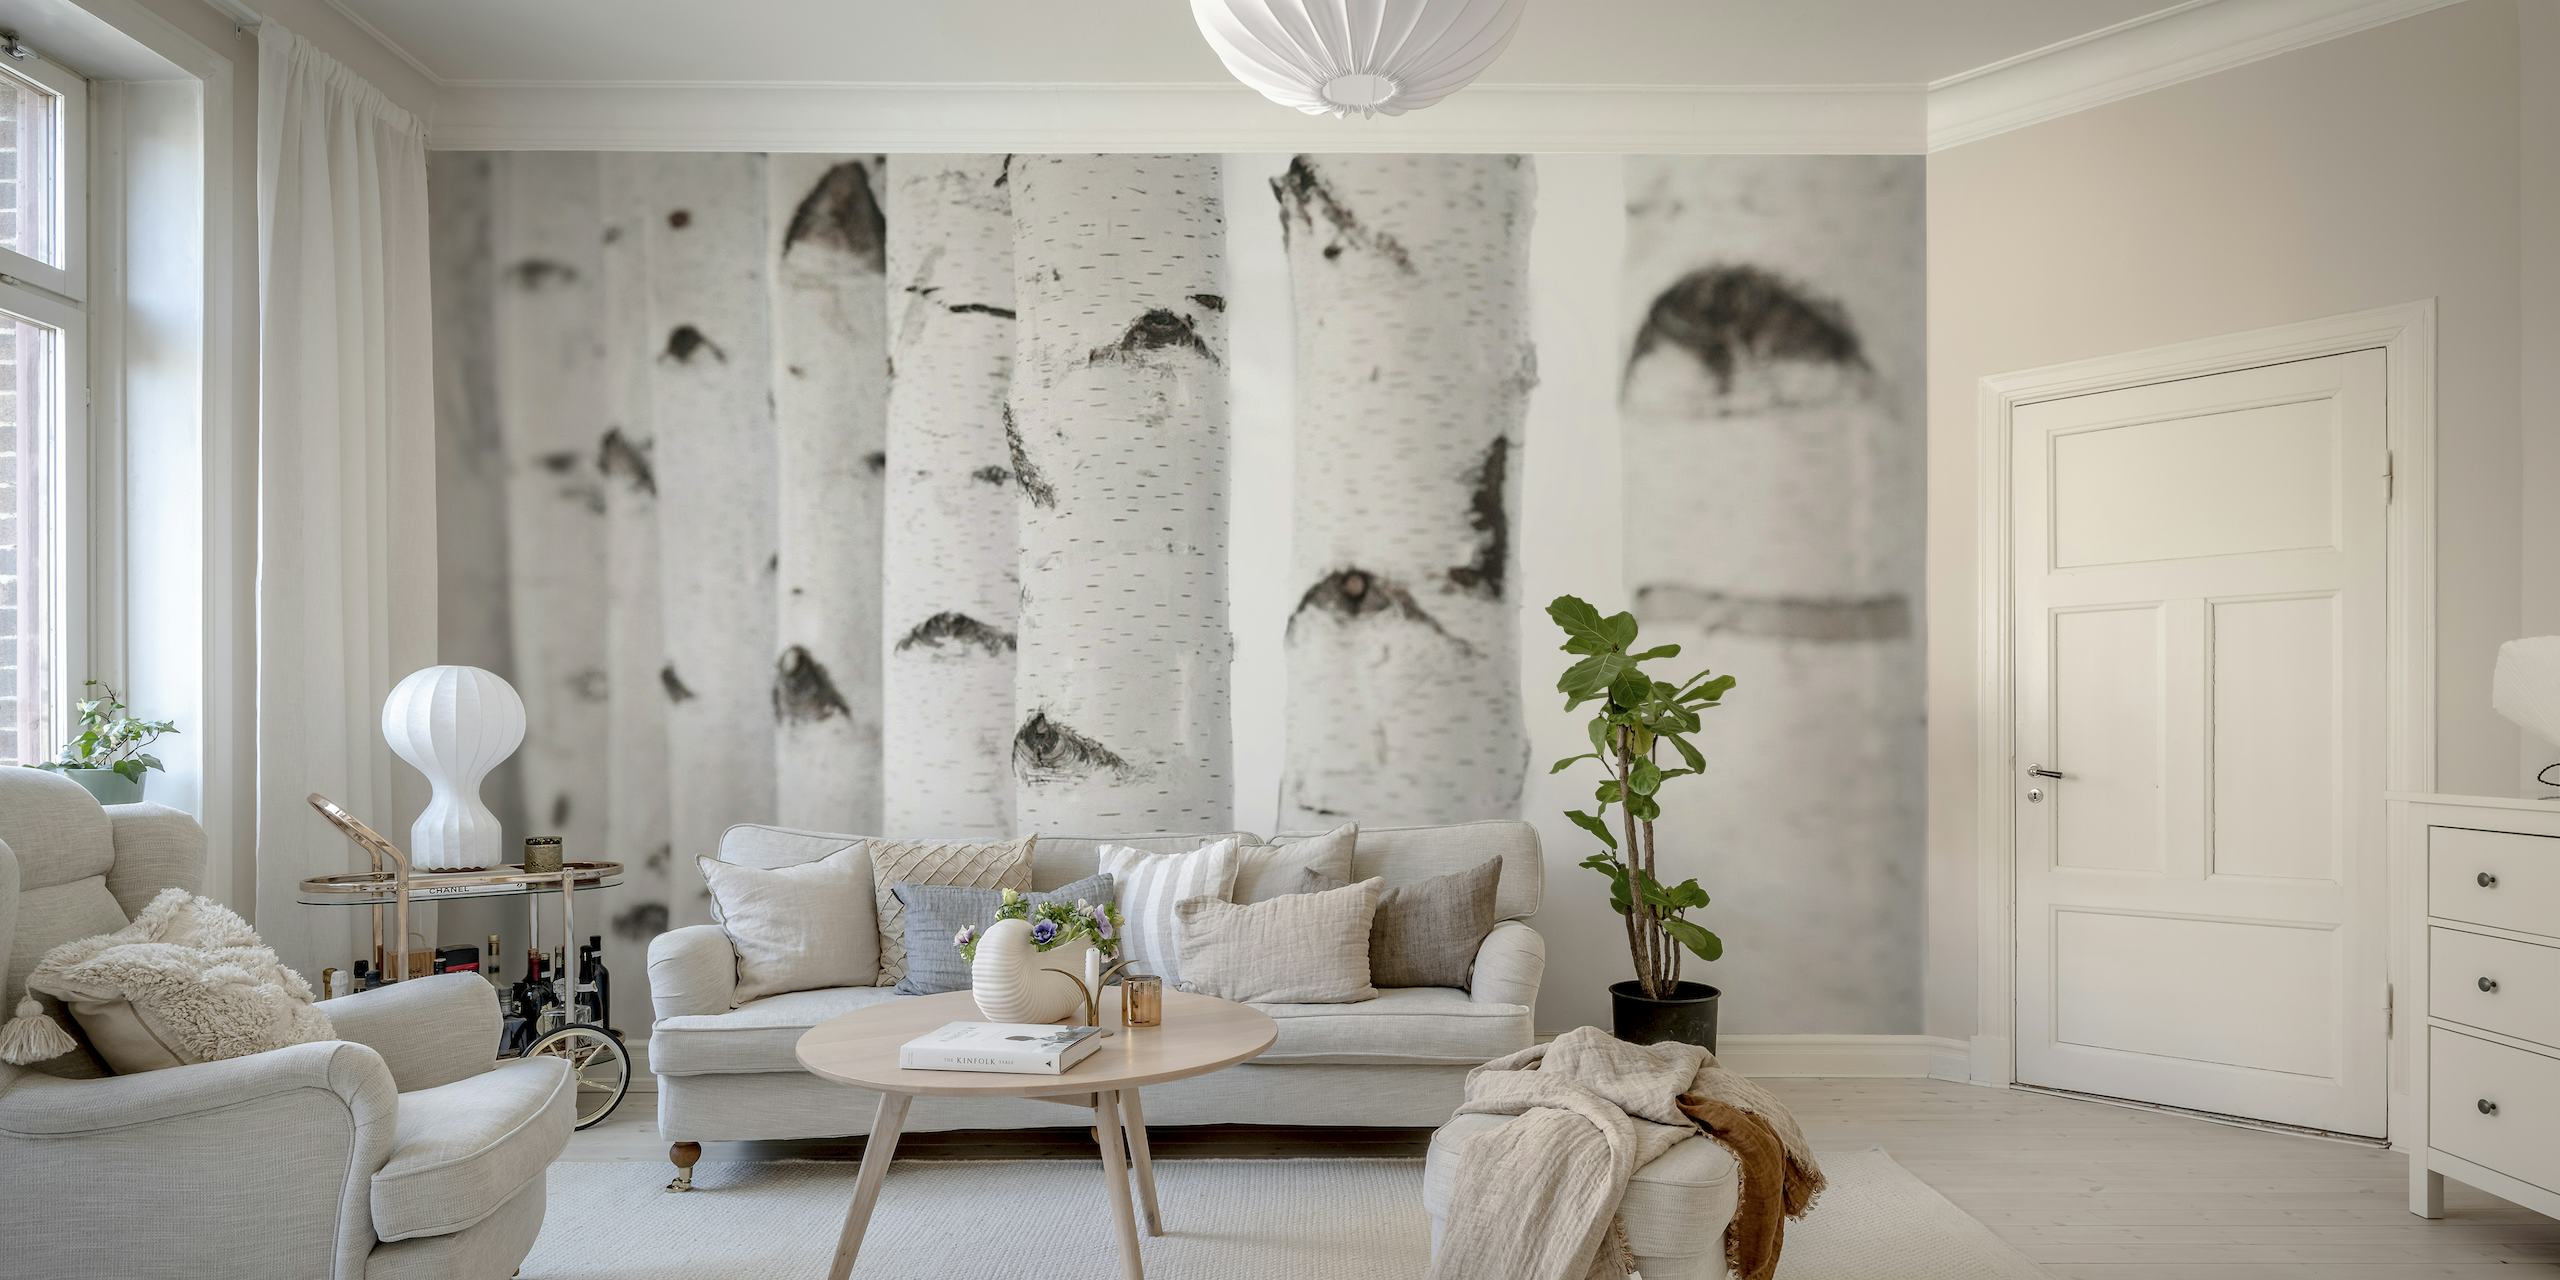 Un murale che presenta una vista ravvicinata di tronchi di betulla bianca con macchie nere, ideale per l'arredamento d'interni.